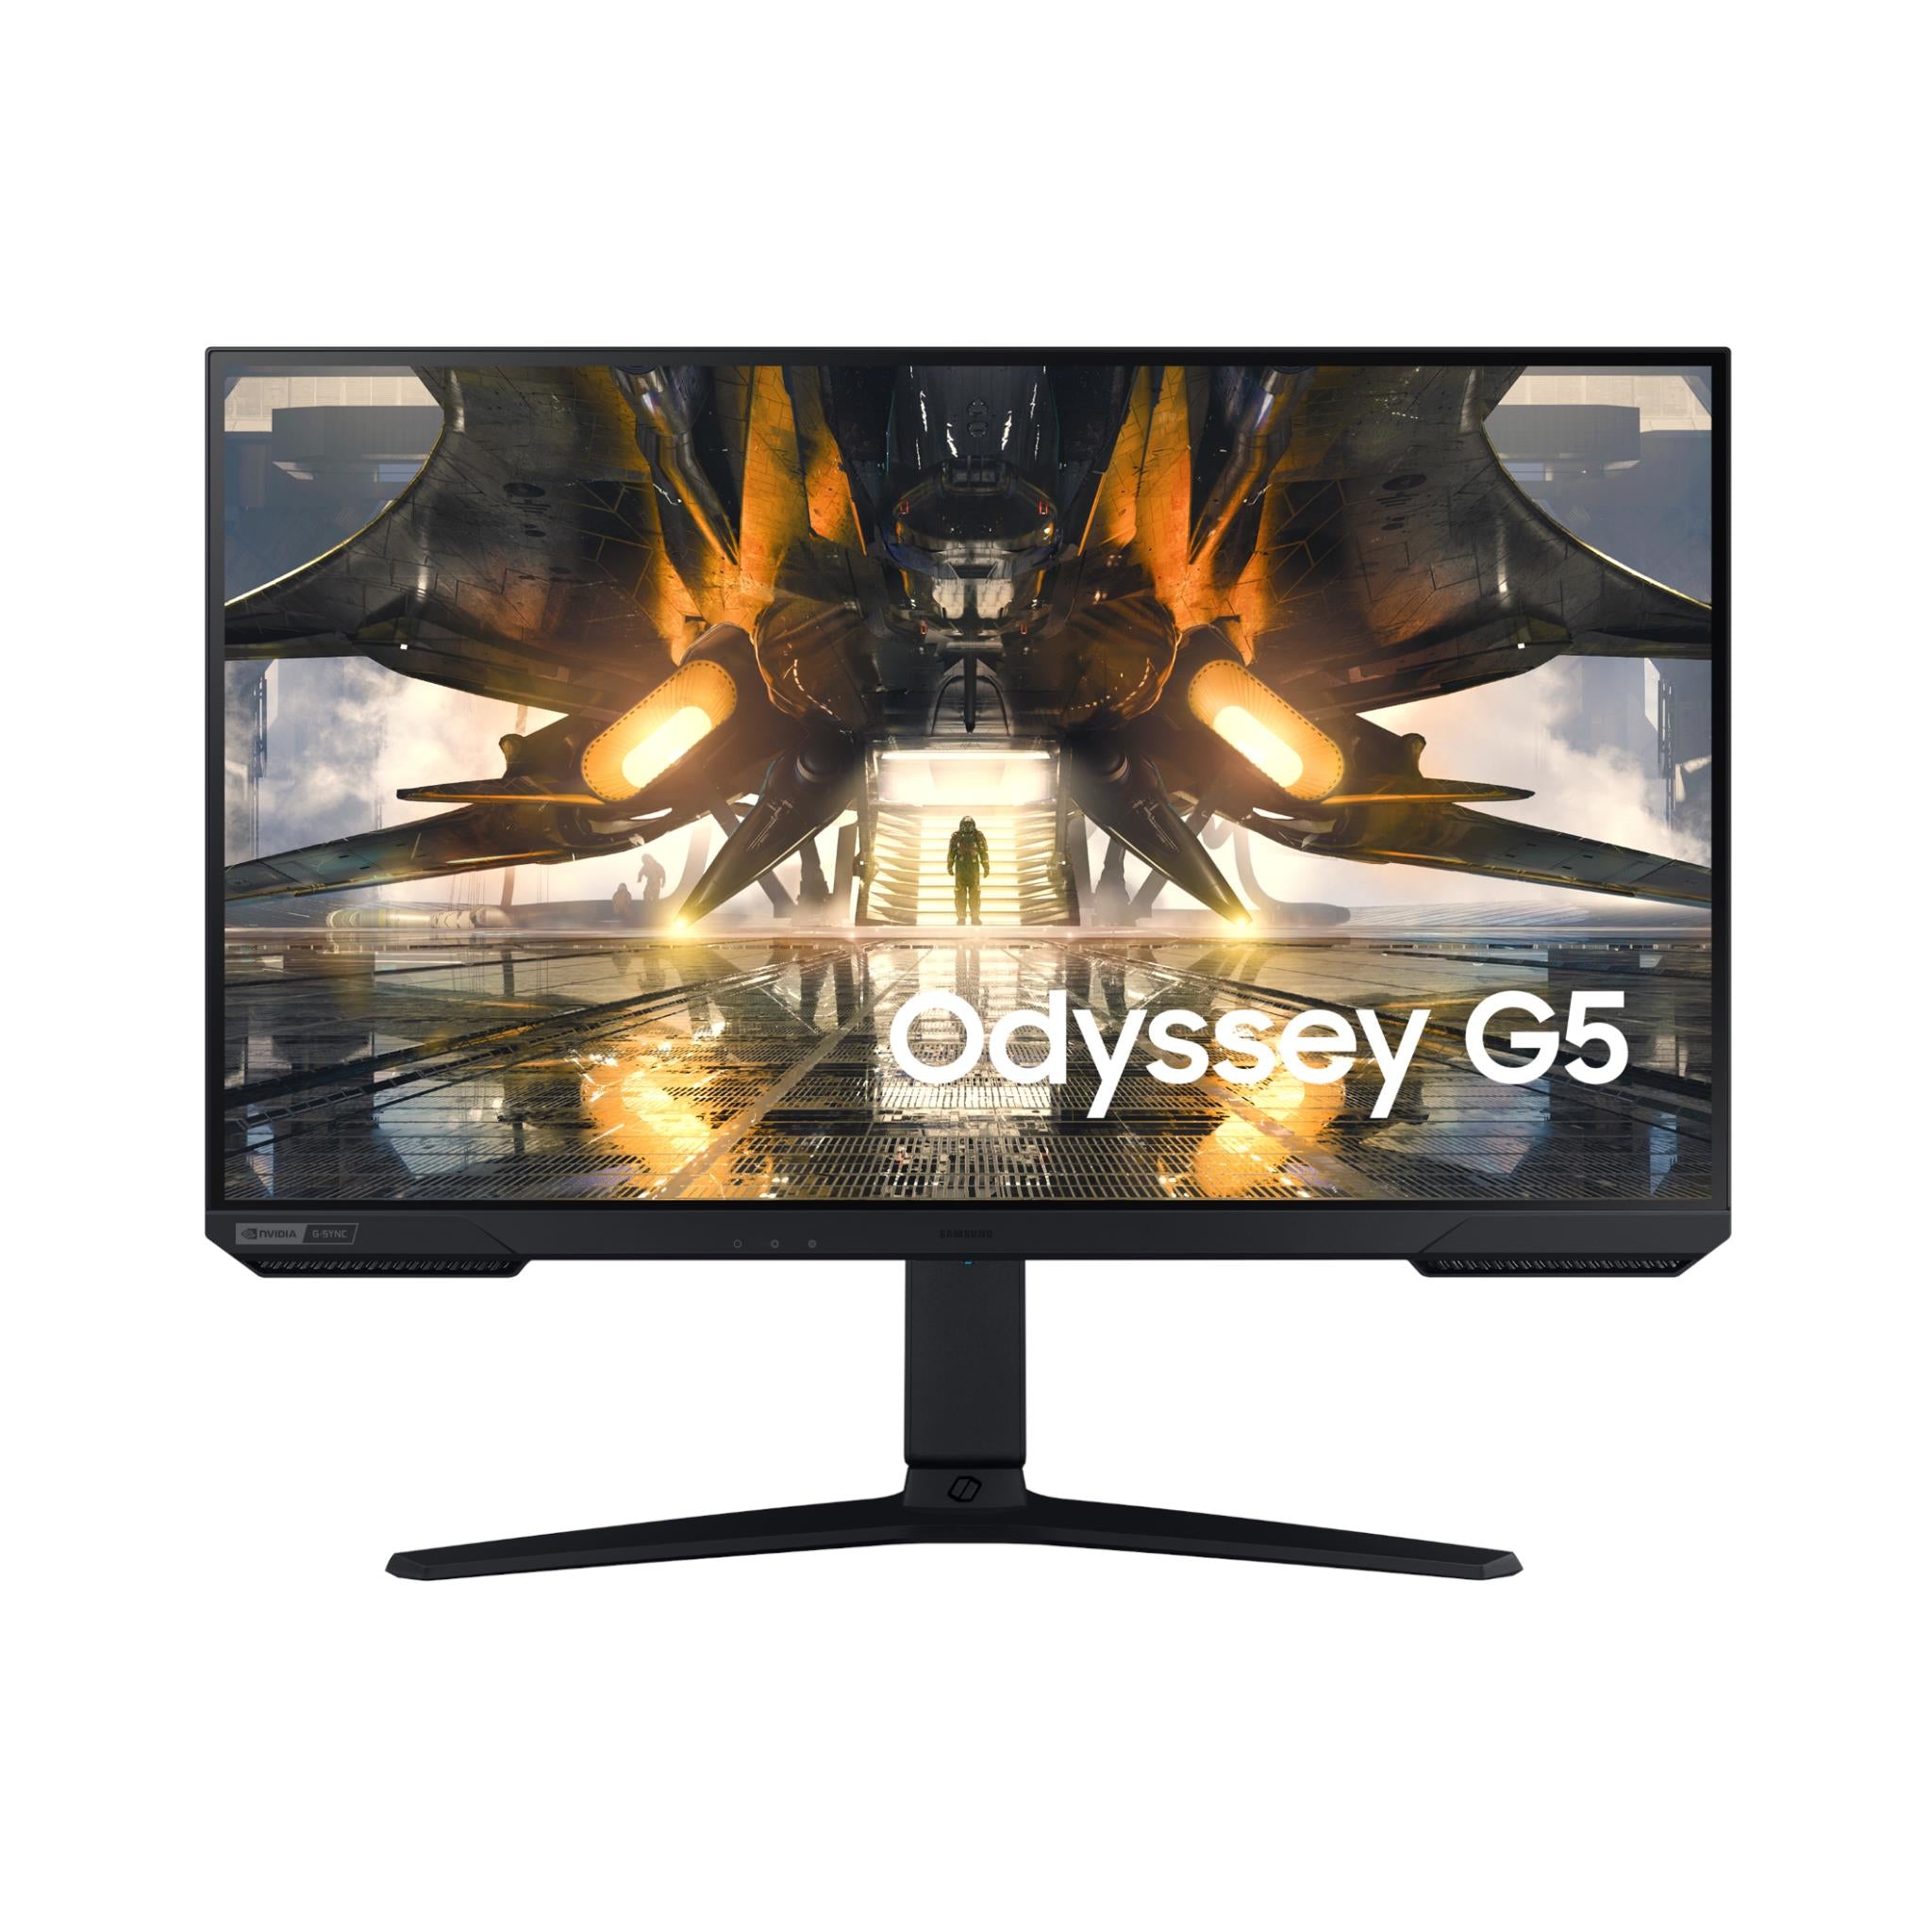 samsung odyssey g50a 27" qhd gaming monitor [^refurbished]